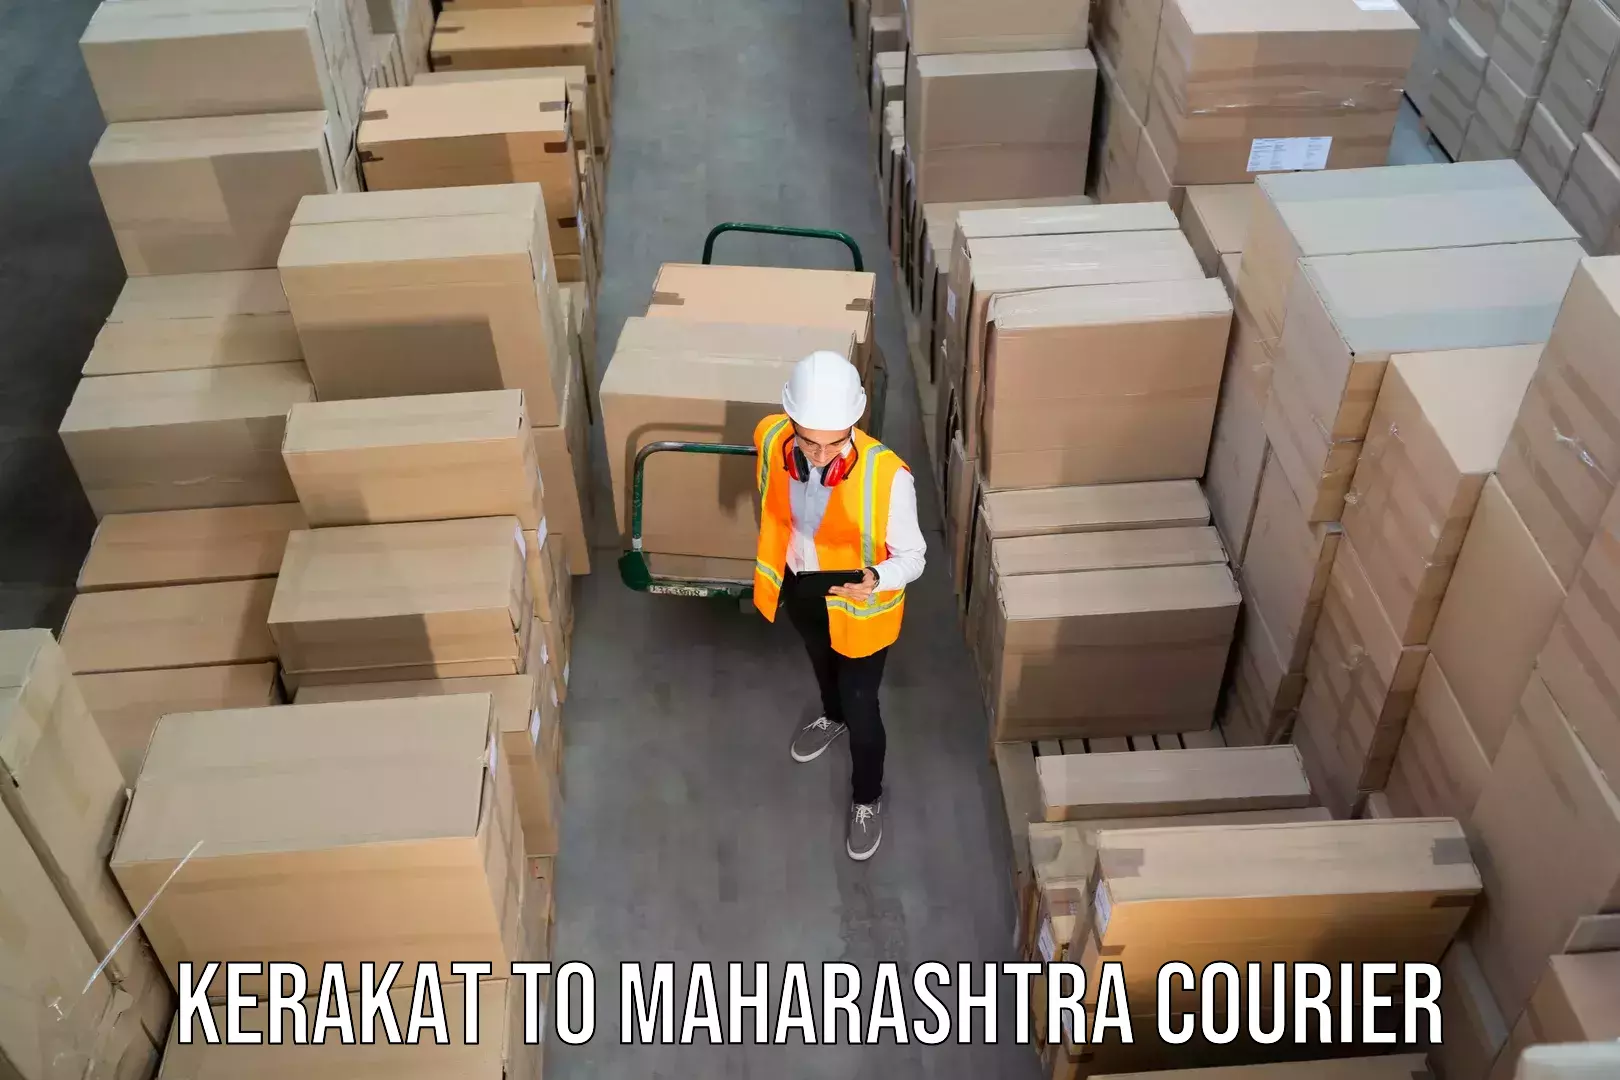 Reliable courier service Kerakat to Navi Mumbai